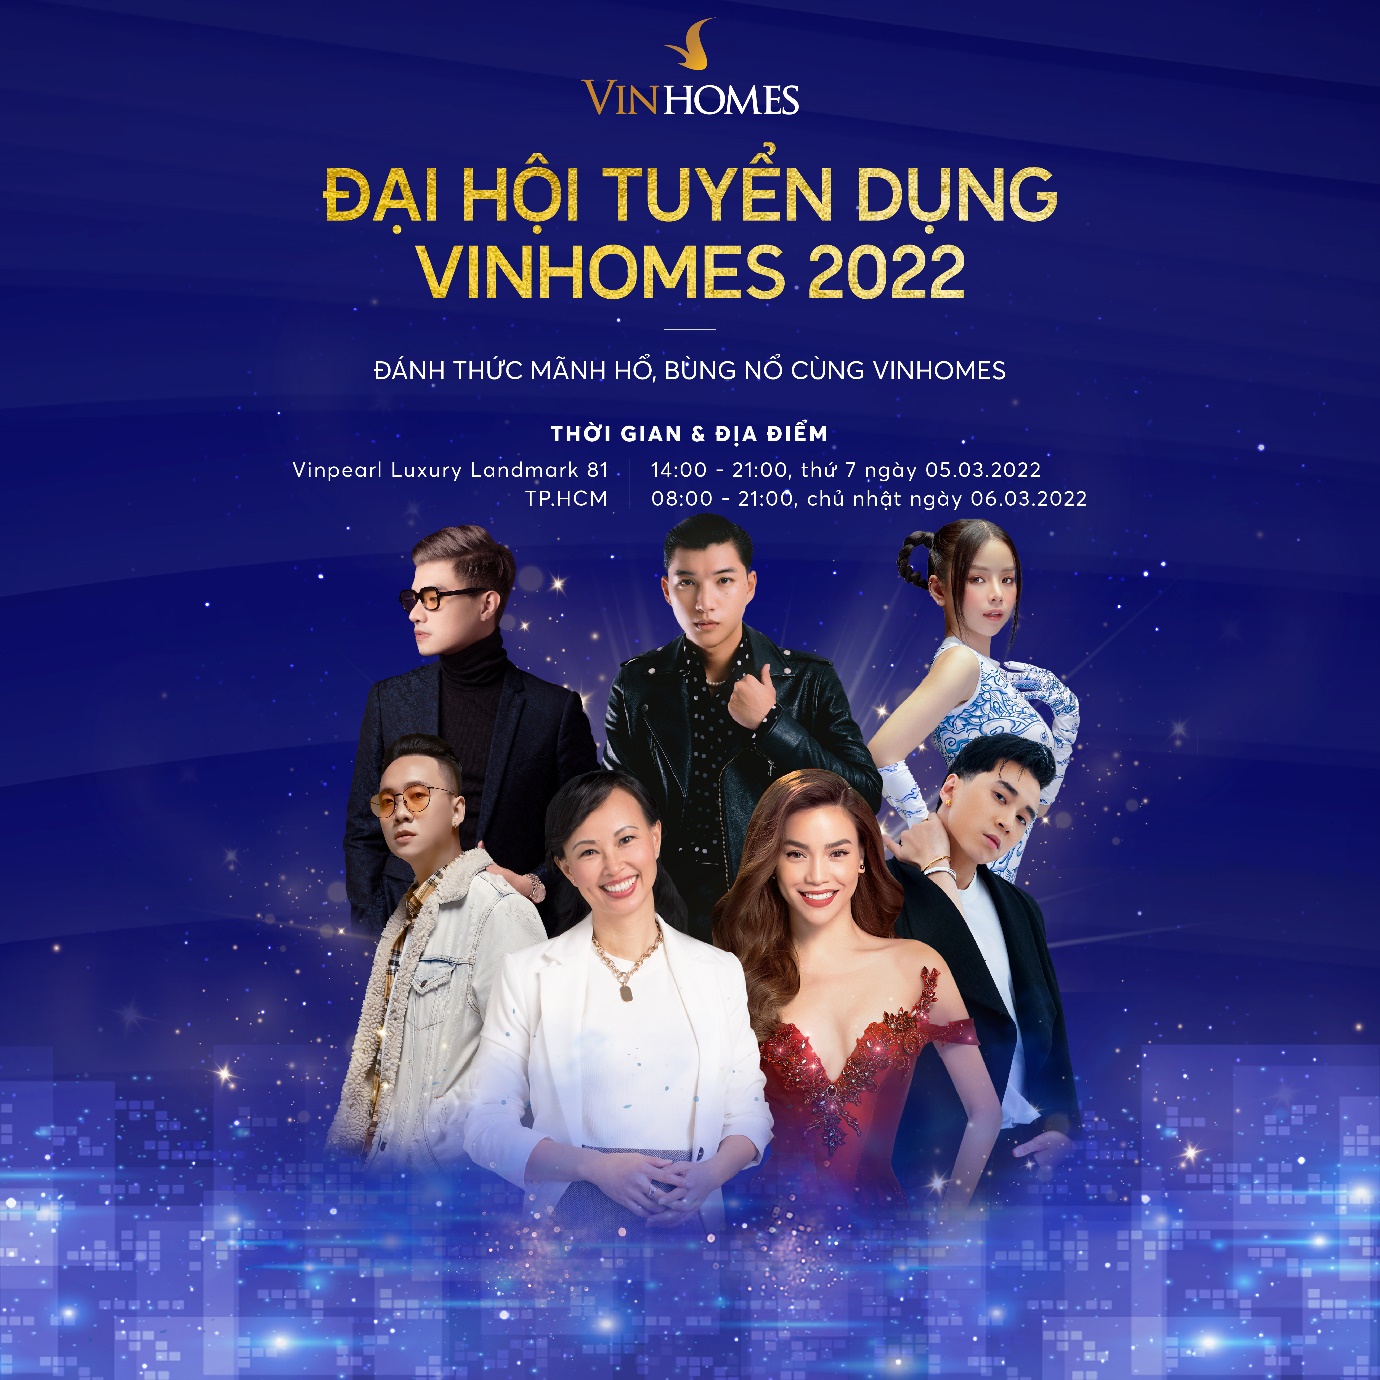 Hơn 15.000 cơ hội việc làm tại Đại hội tuyển dụng Vinhomes 2022 - Ảnh 1.